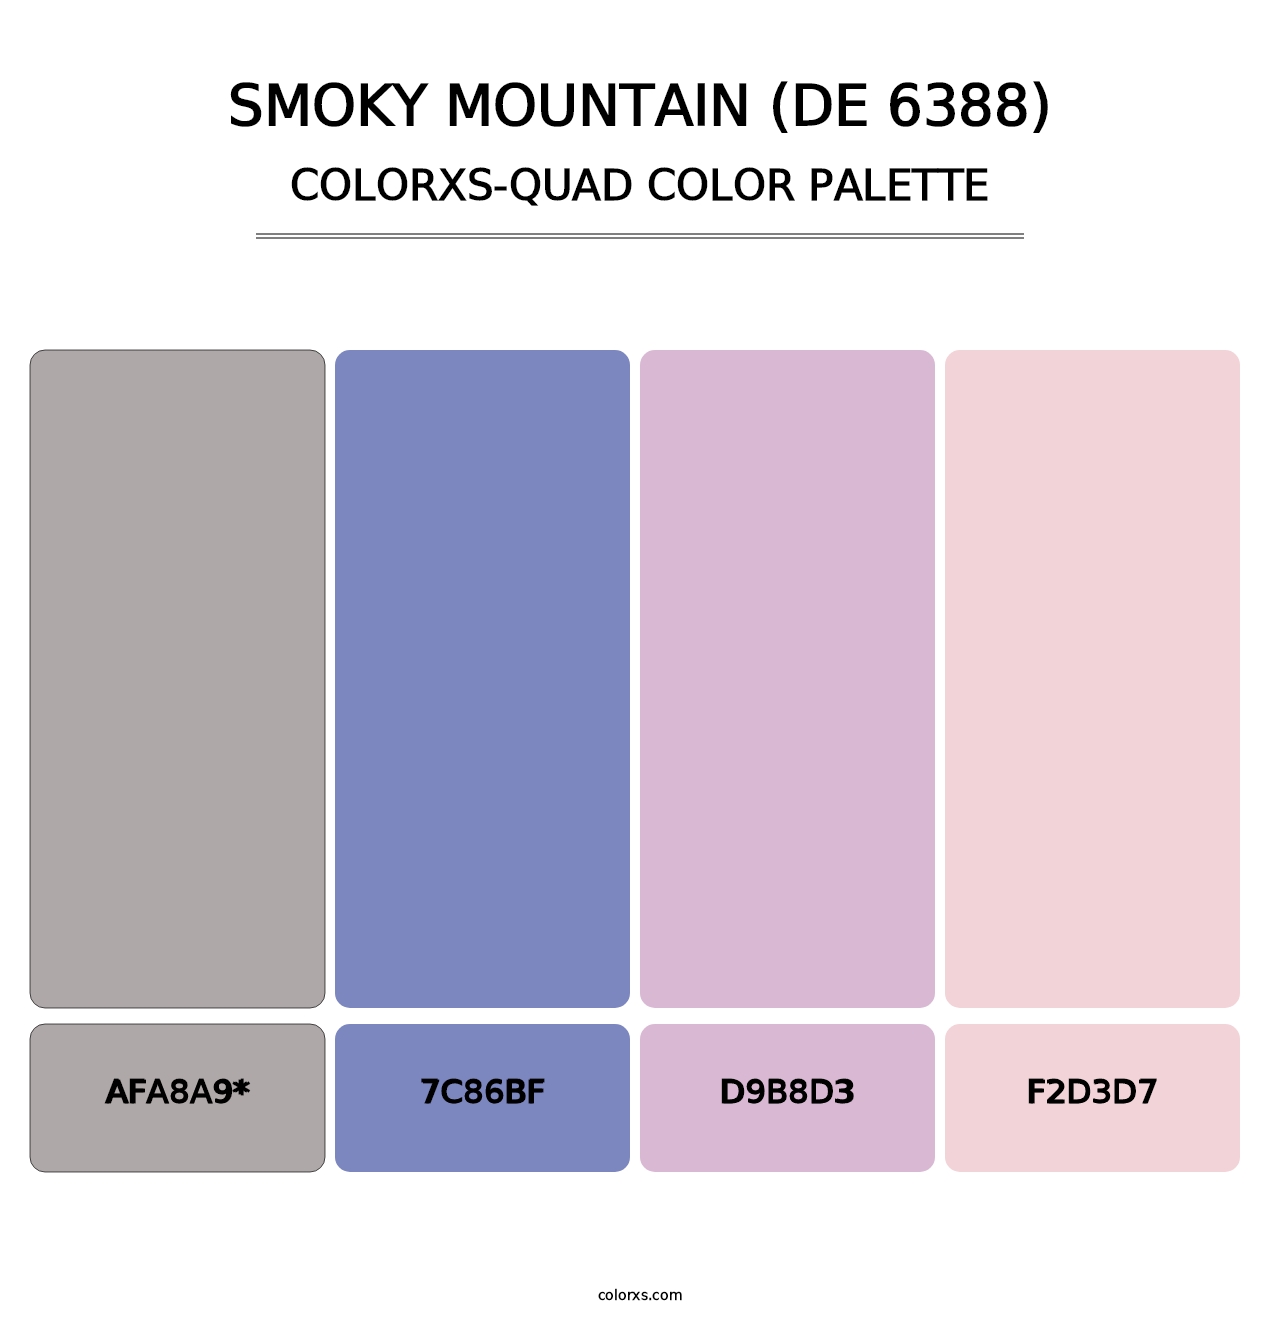 Smoky Mountain (DE 6388) - Colorxs Quad Palette